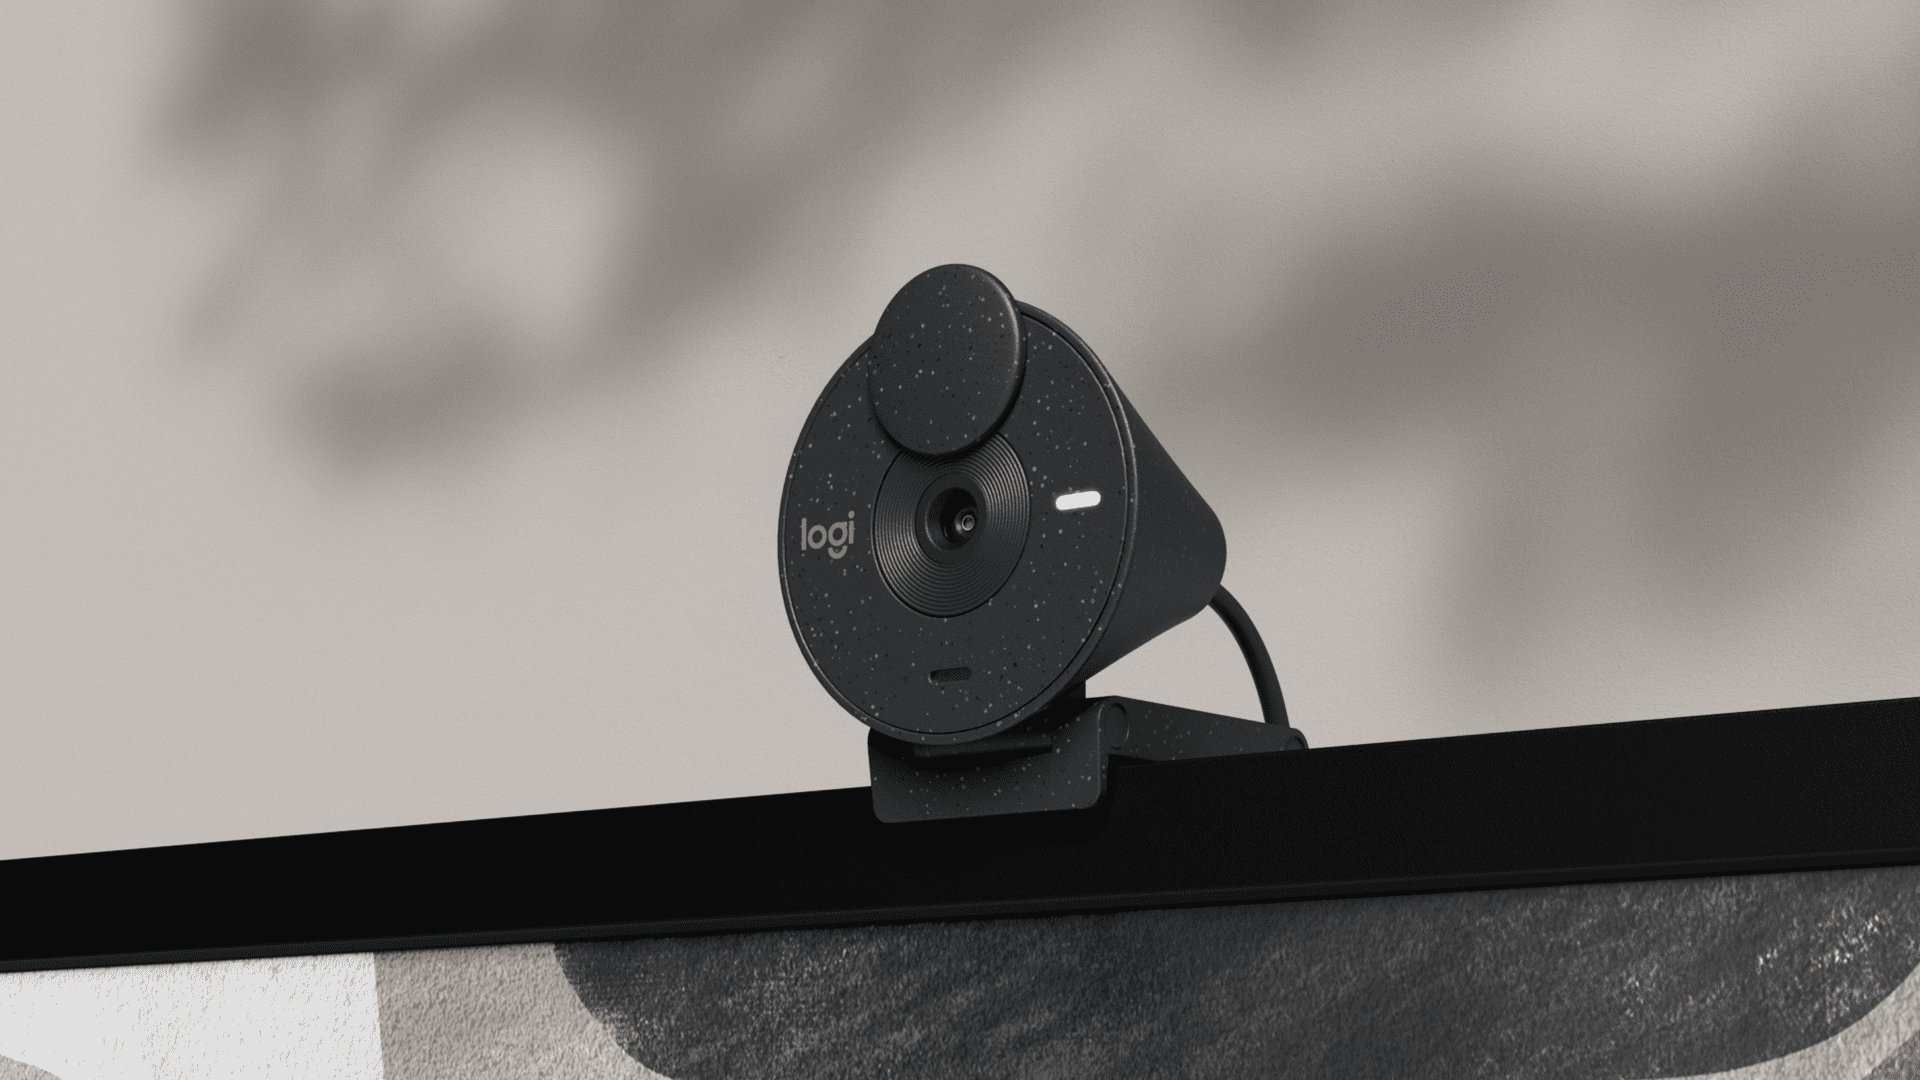 Las cámaras web Logitech Brio 305 mejoran de manera accesible las experiencias de vídeo